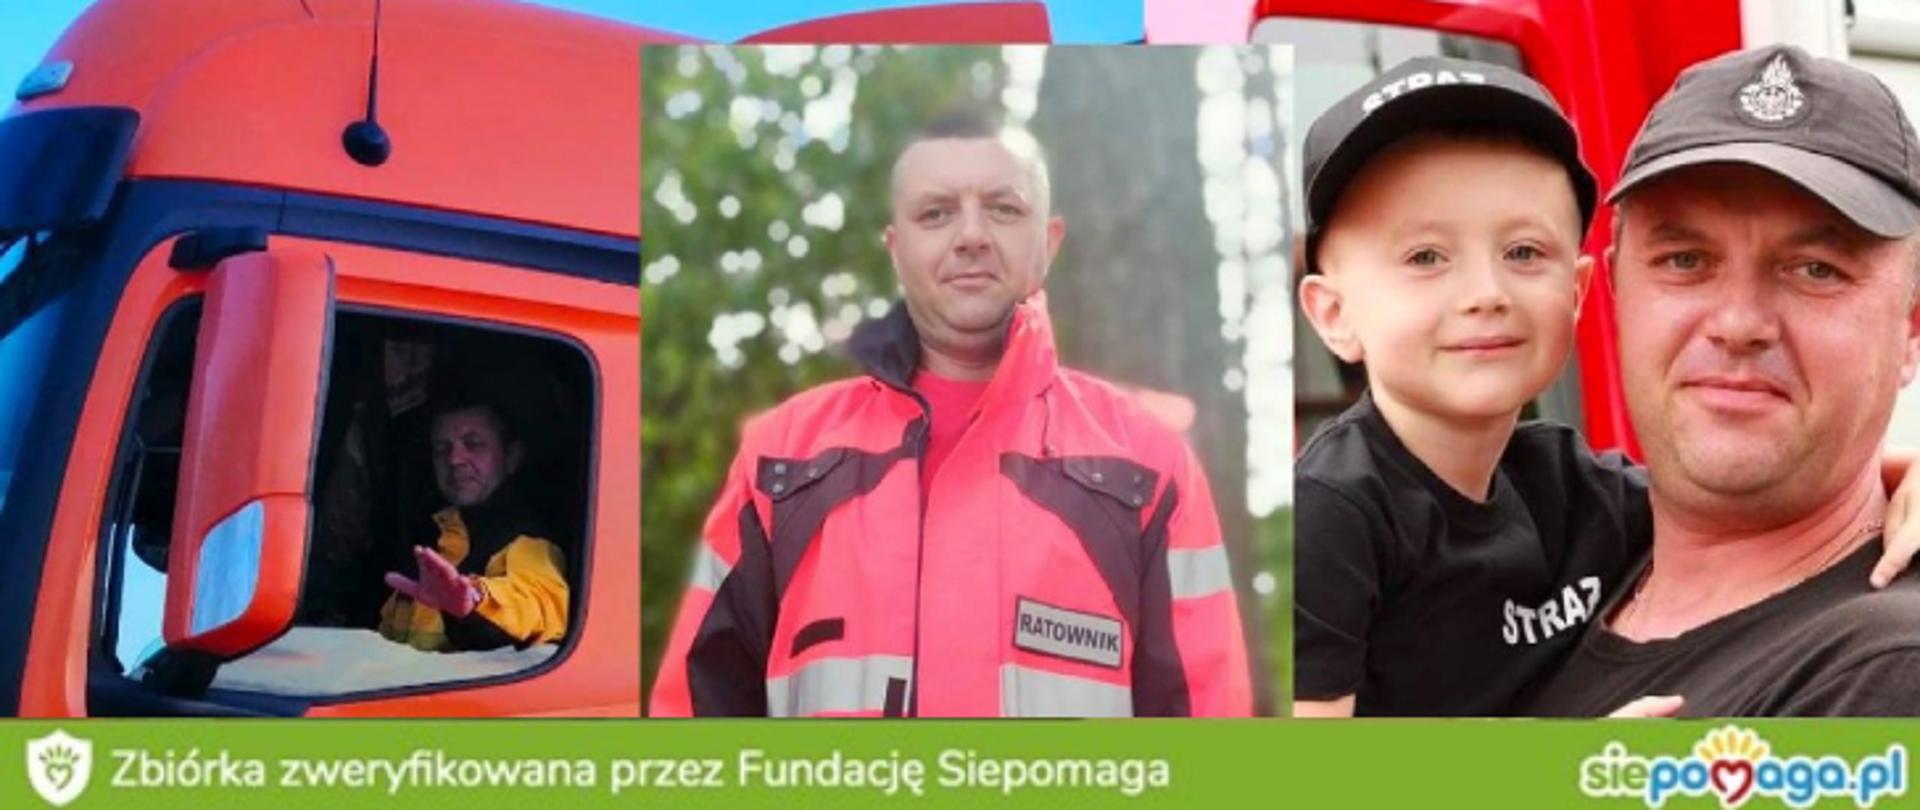 Na zdjęciu Bartłomiej Sobczak, po prawej stronie z synem, na środku w ubraniu ratowniczym, po lewej w kabinie samochodu ciężarowego.